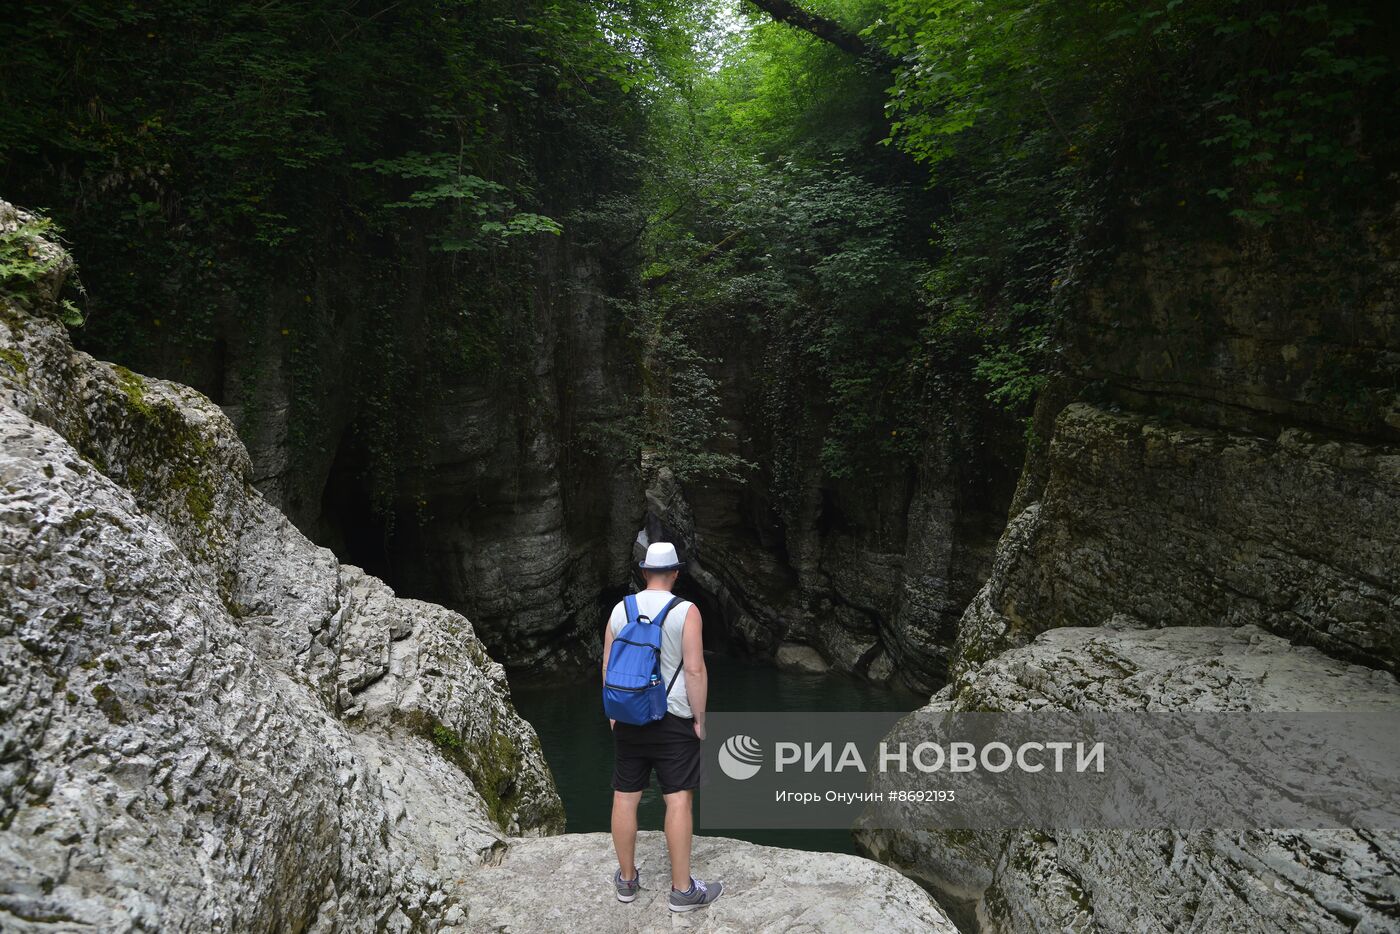 Агурское ущелье в Краснодарском крае